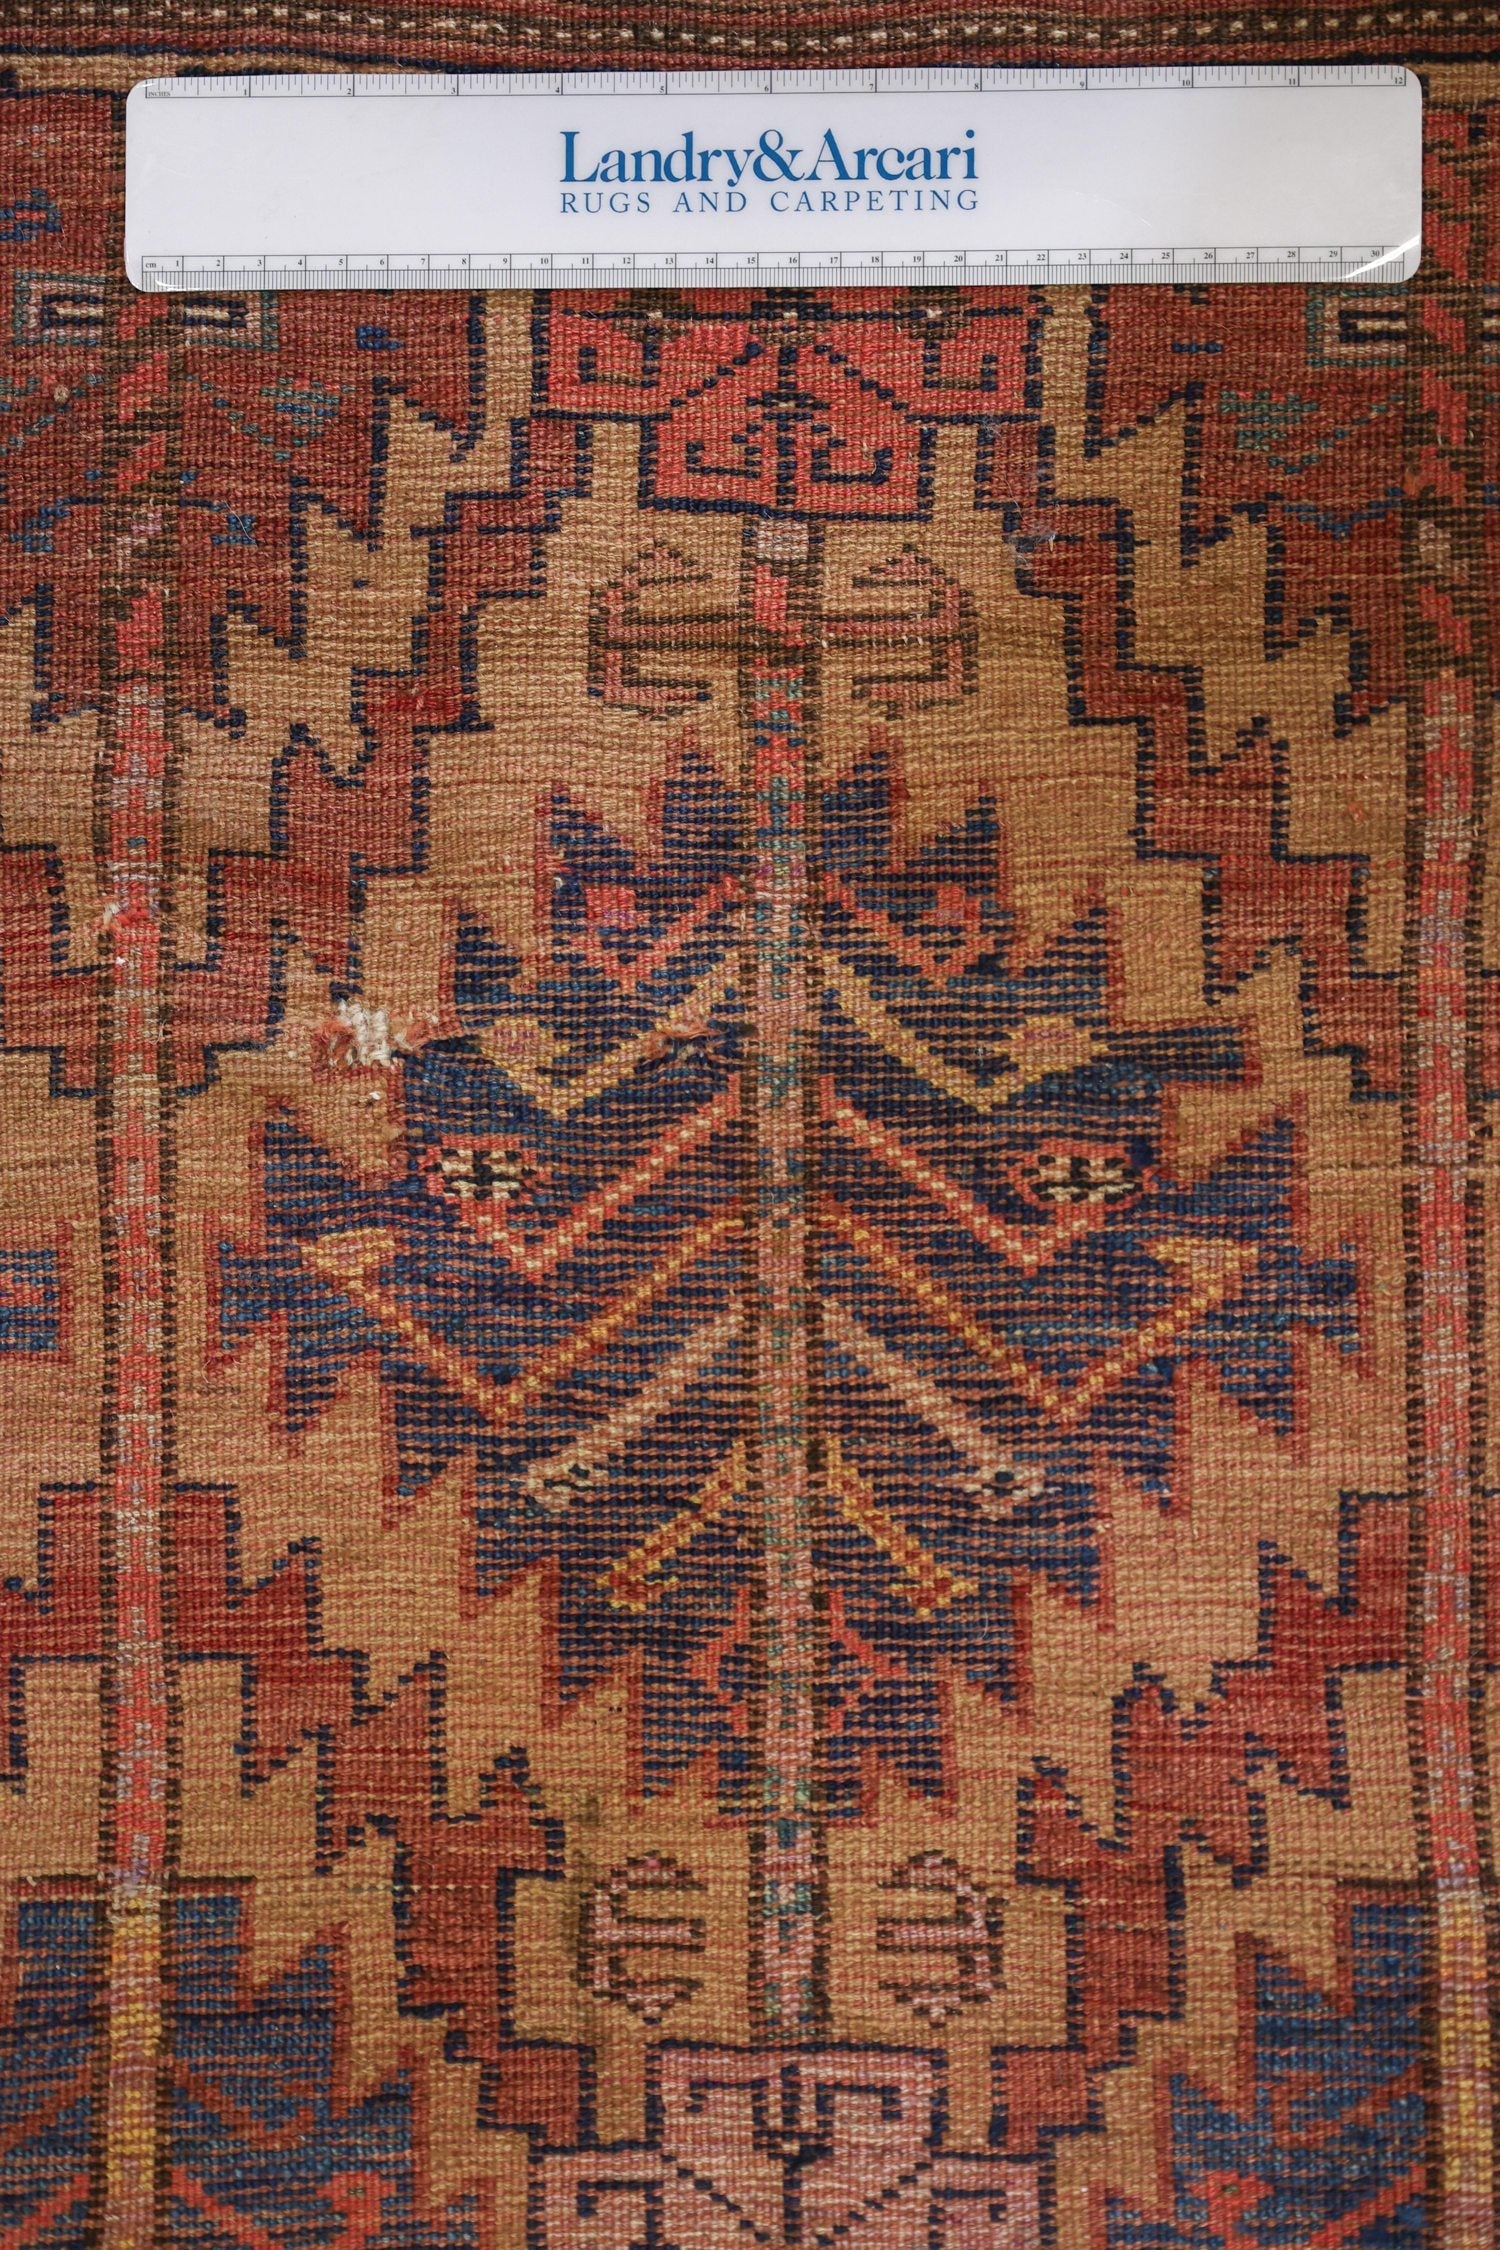 Vintage Afshar Handwoven Tribal Rug, J71242